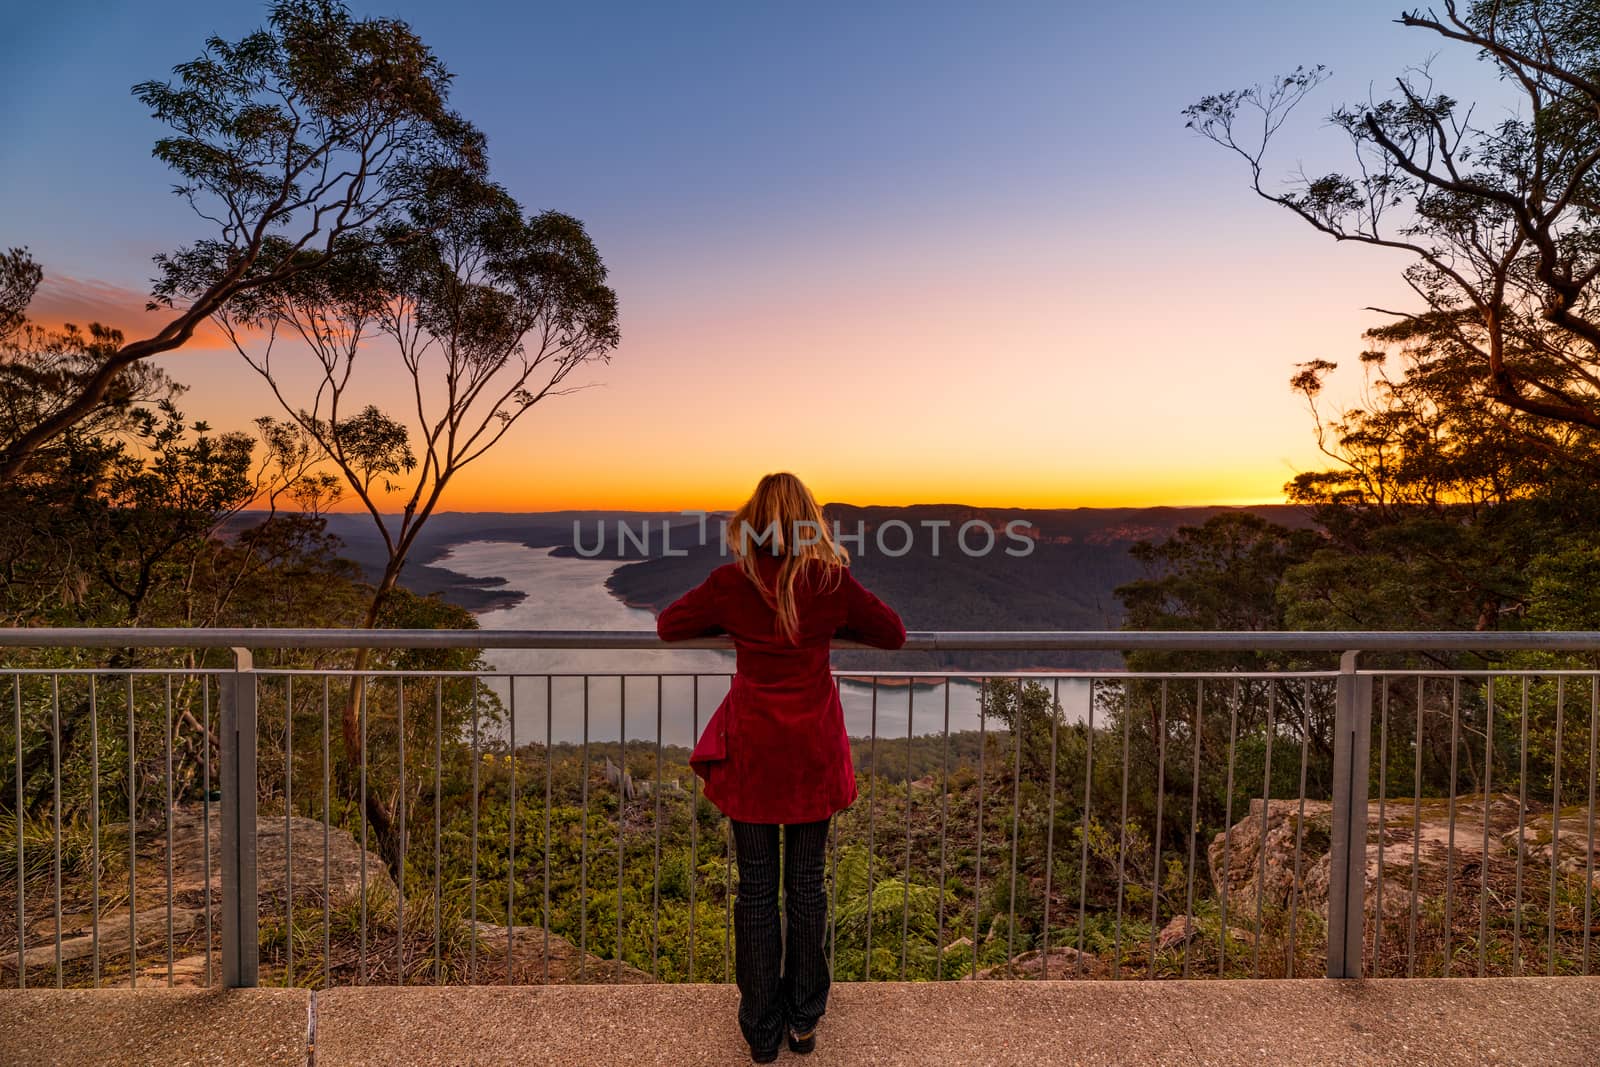 Watching the sunset at Burragorang lookout, Nattai Australia